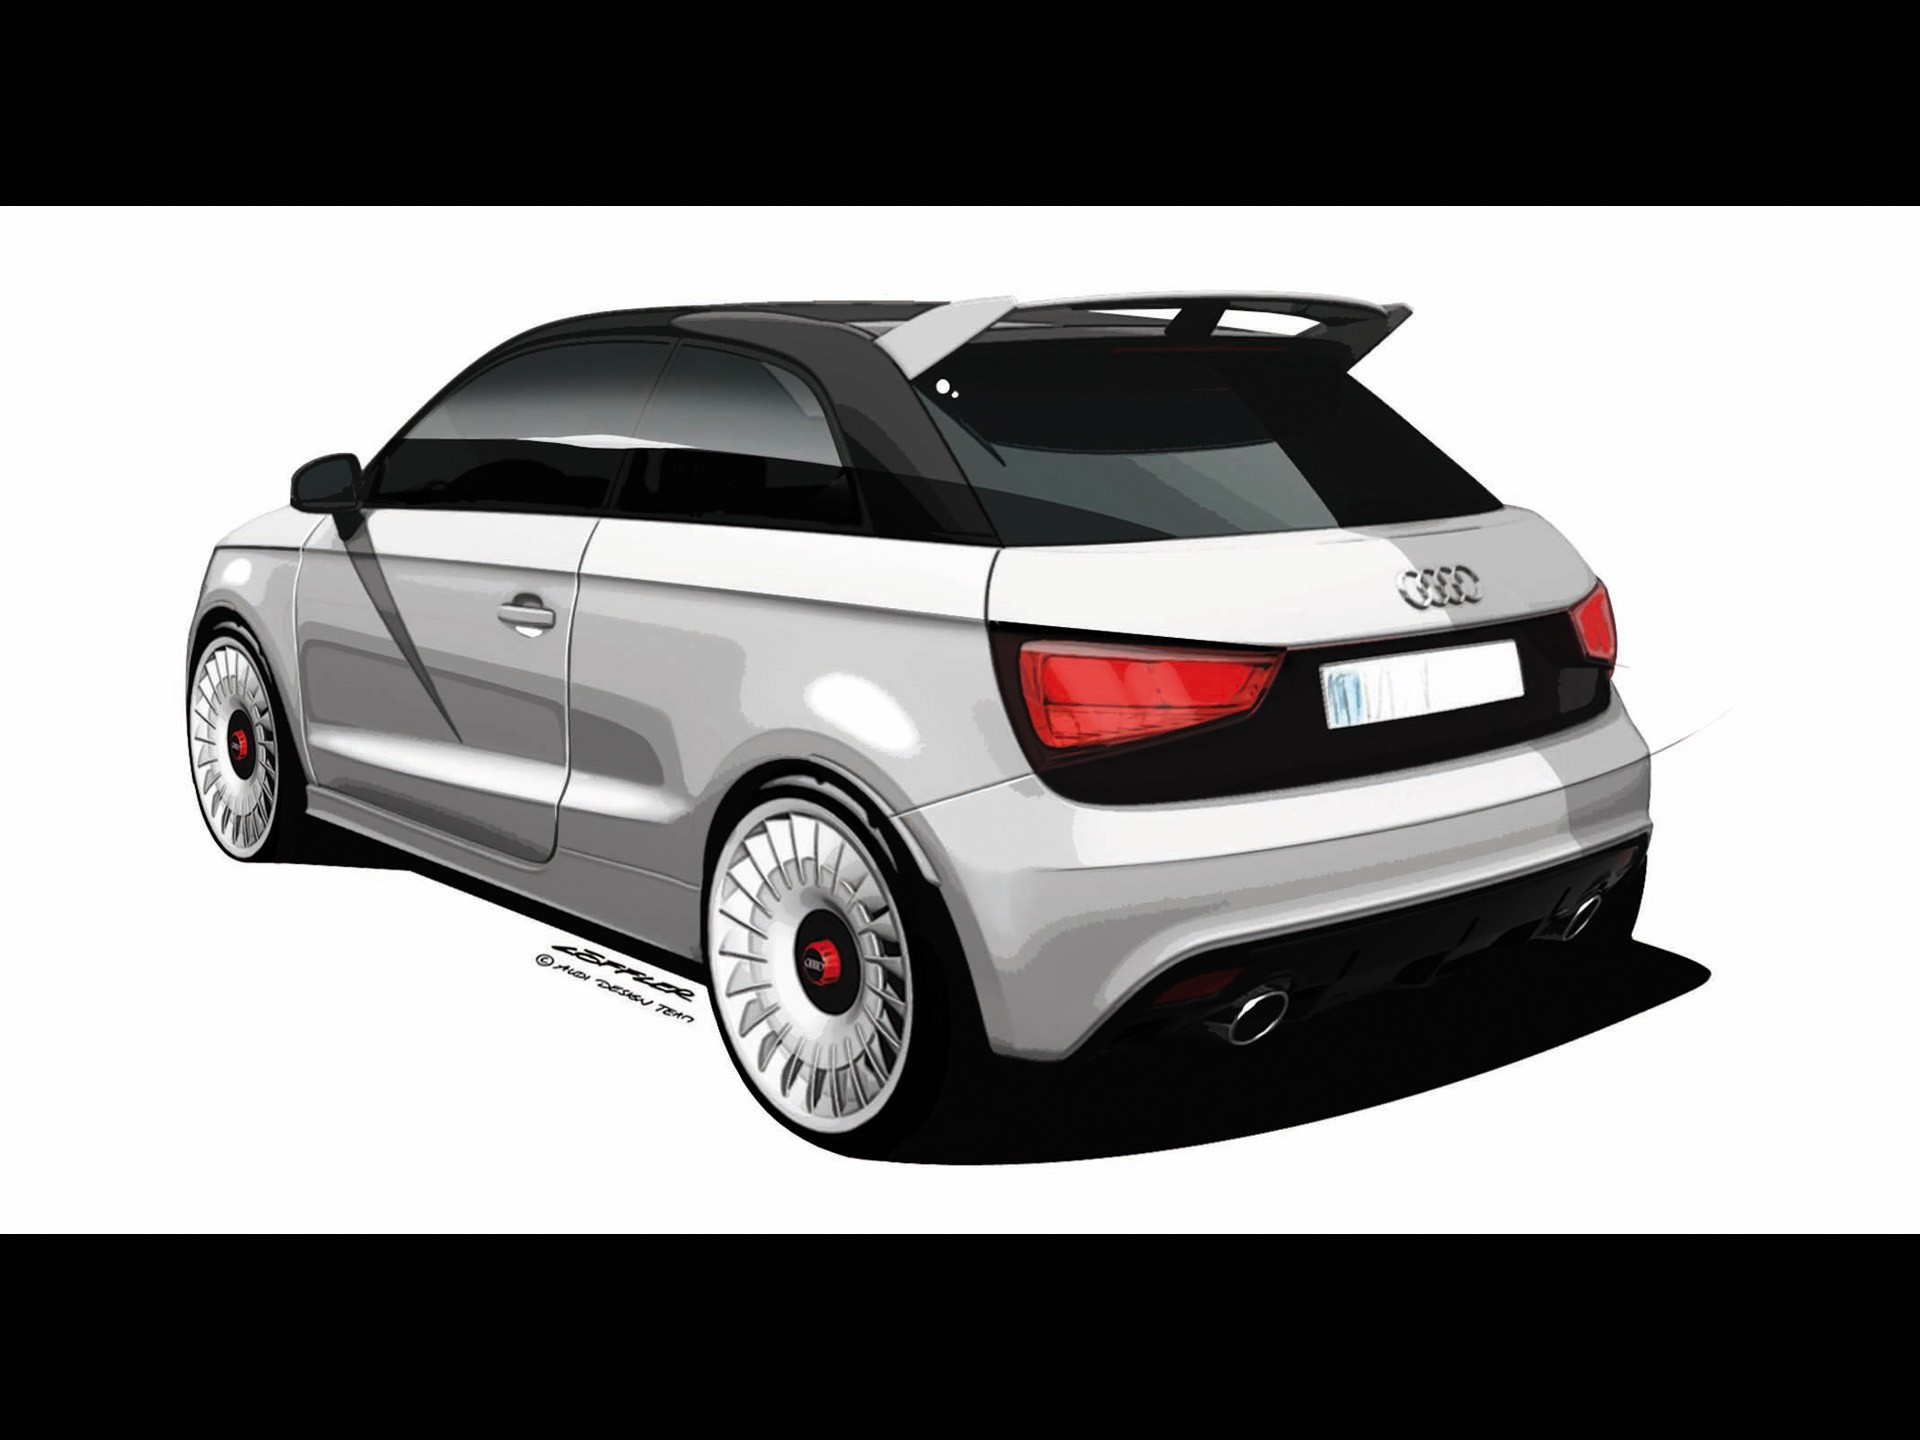 Audi A1 Quattro Design Sketches Vehicles Wallpaper - Audi Quattro , HD Wallpaper & Backgrounds